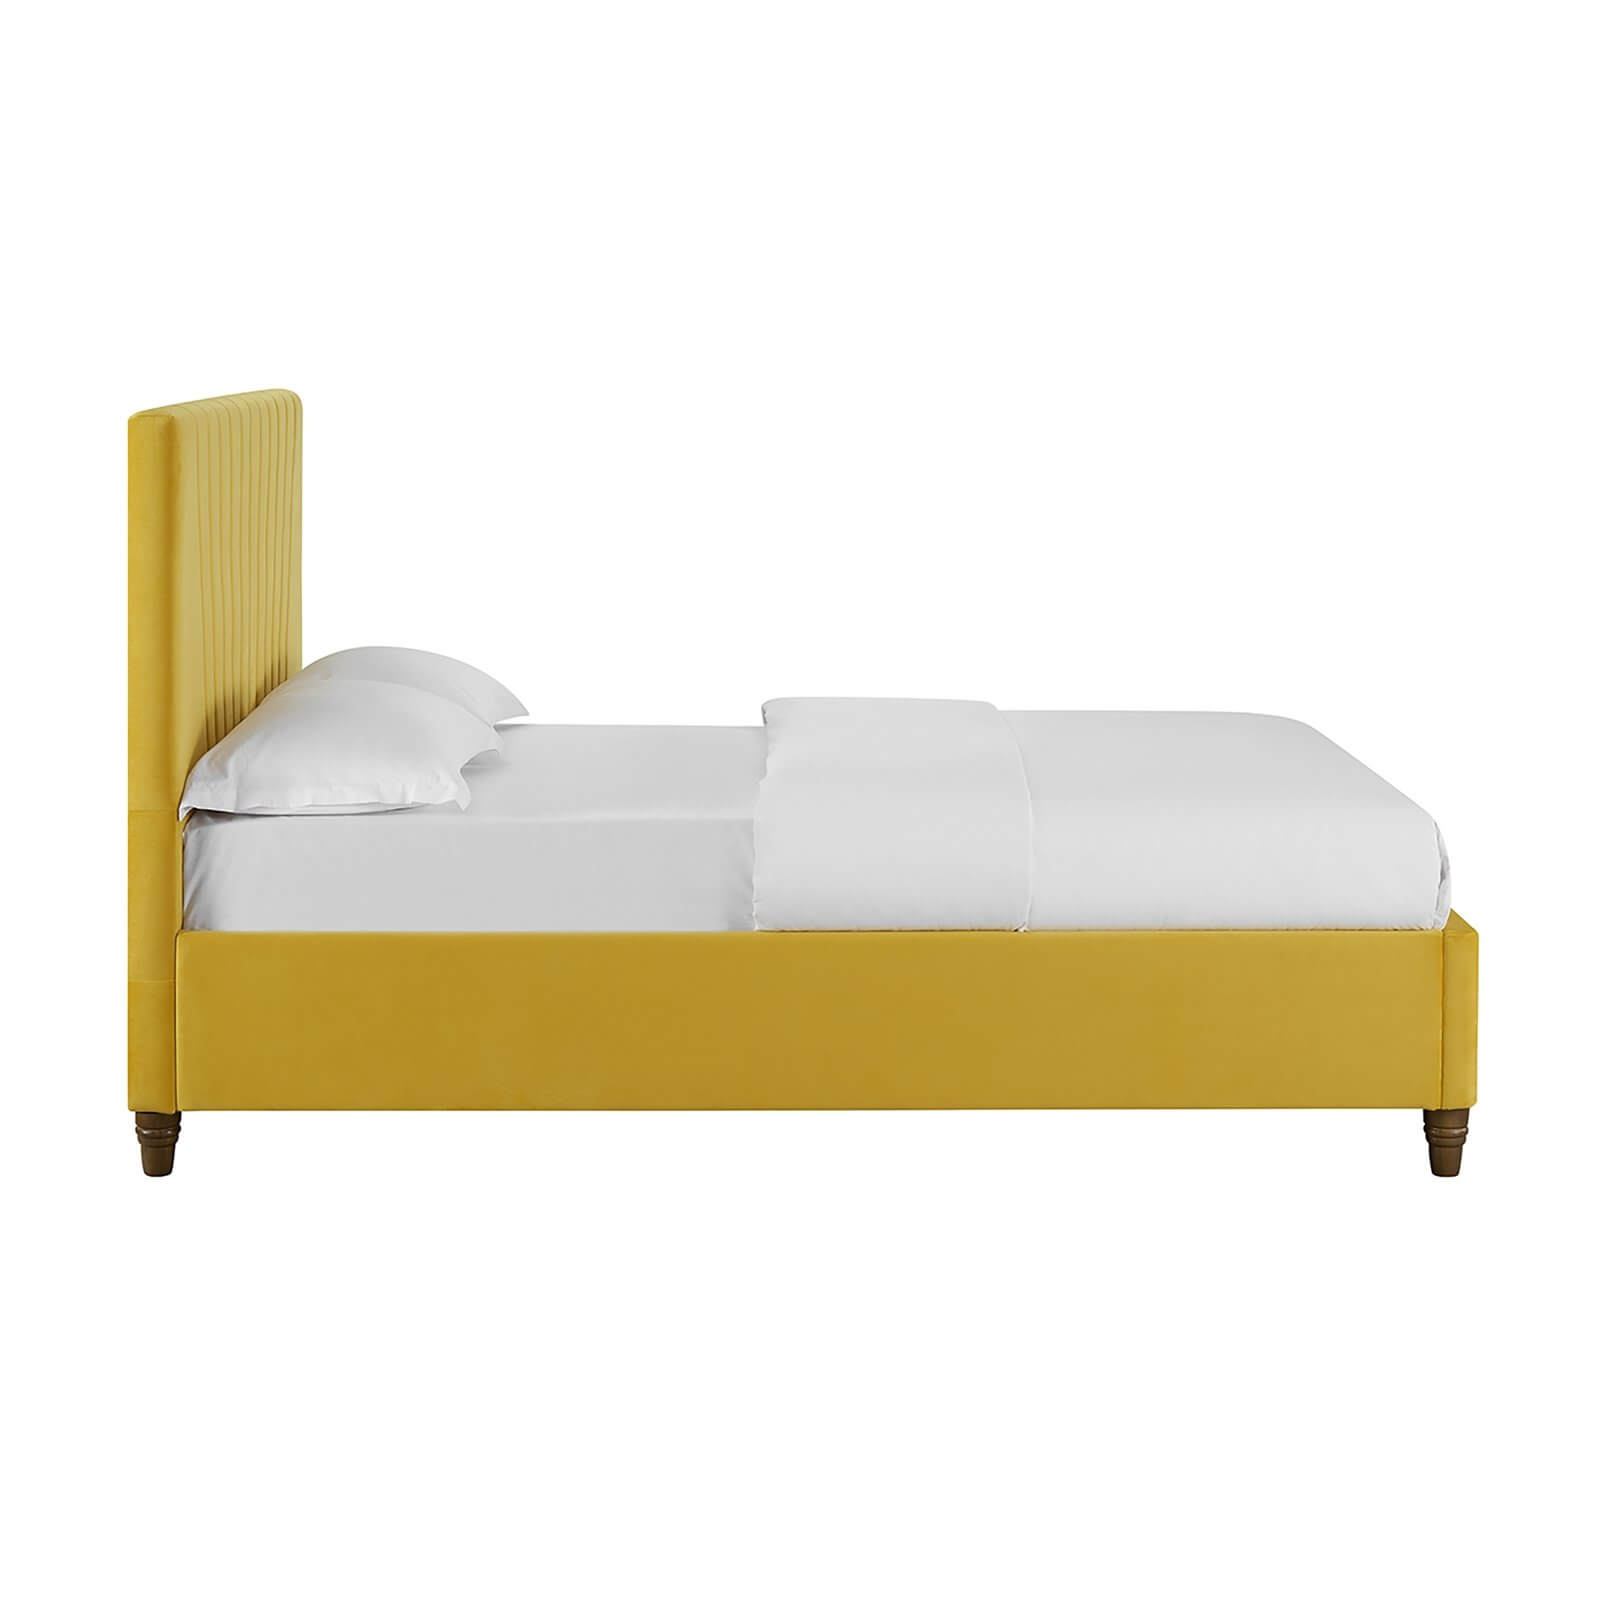 Lexie Velvet Upholstered Double Bed - Mustard